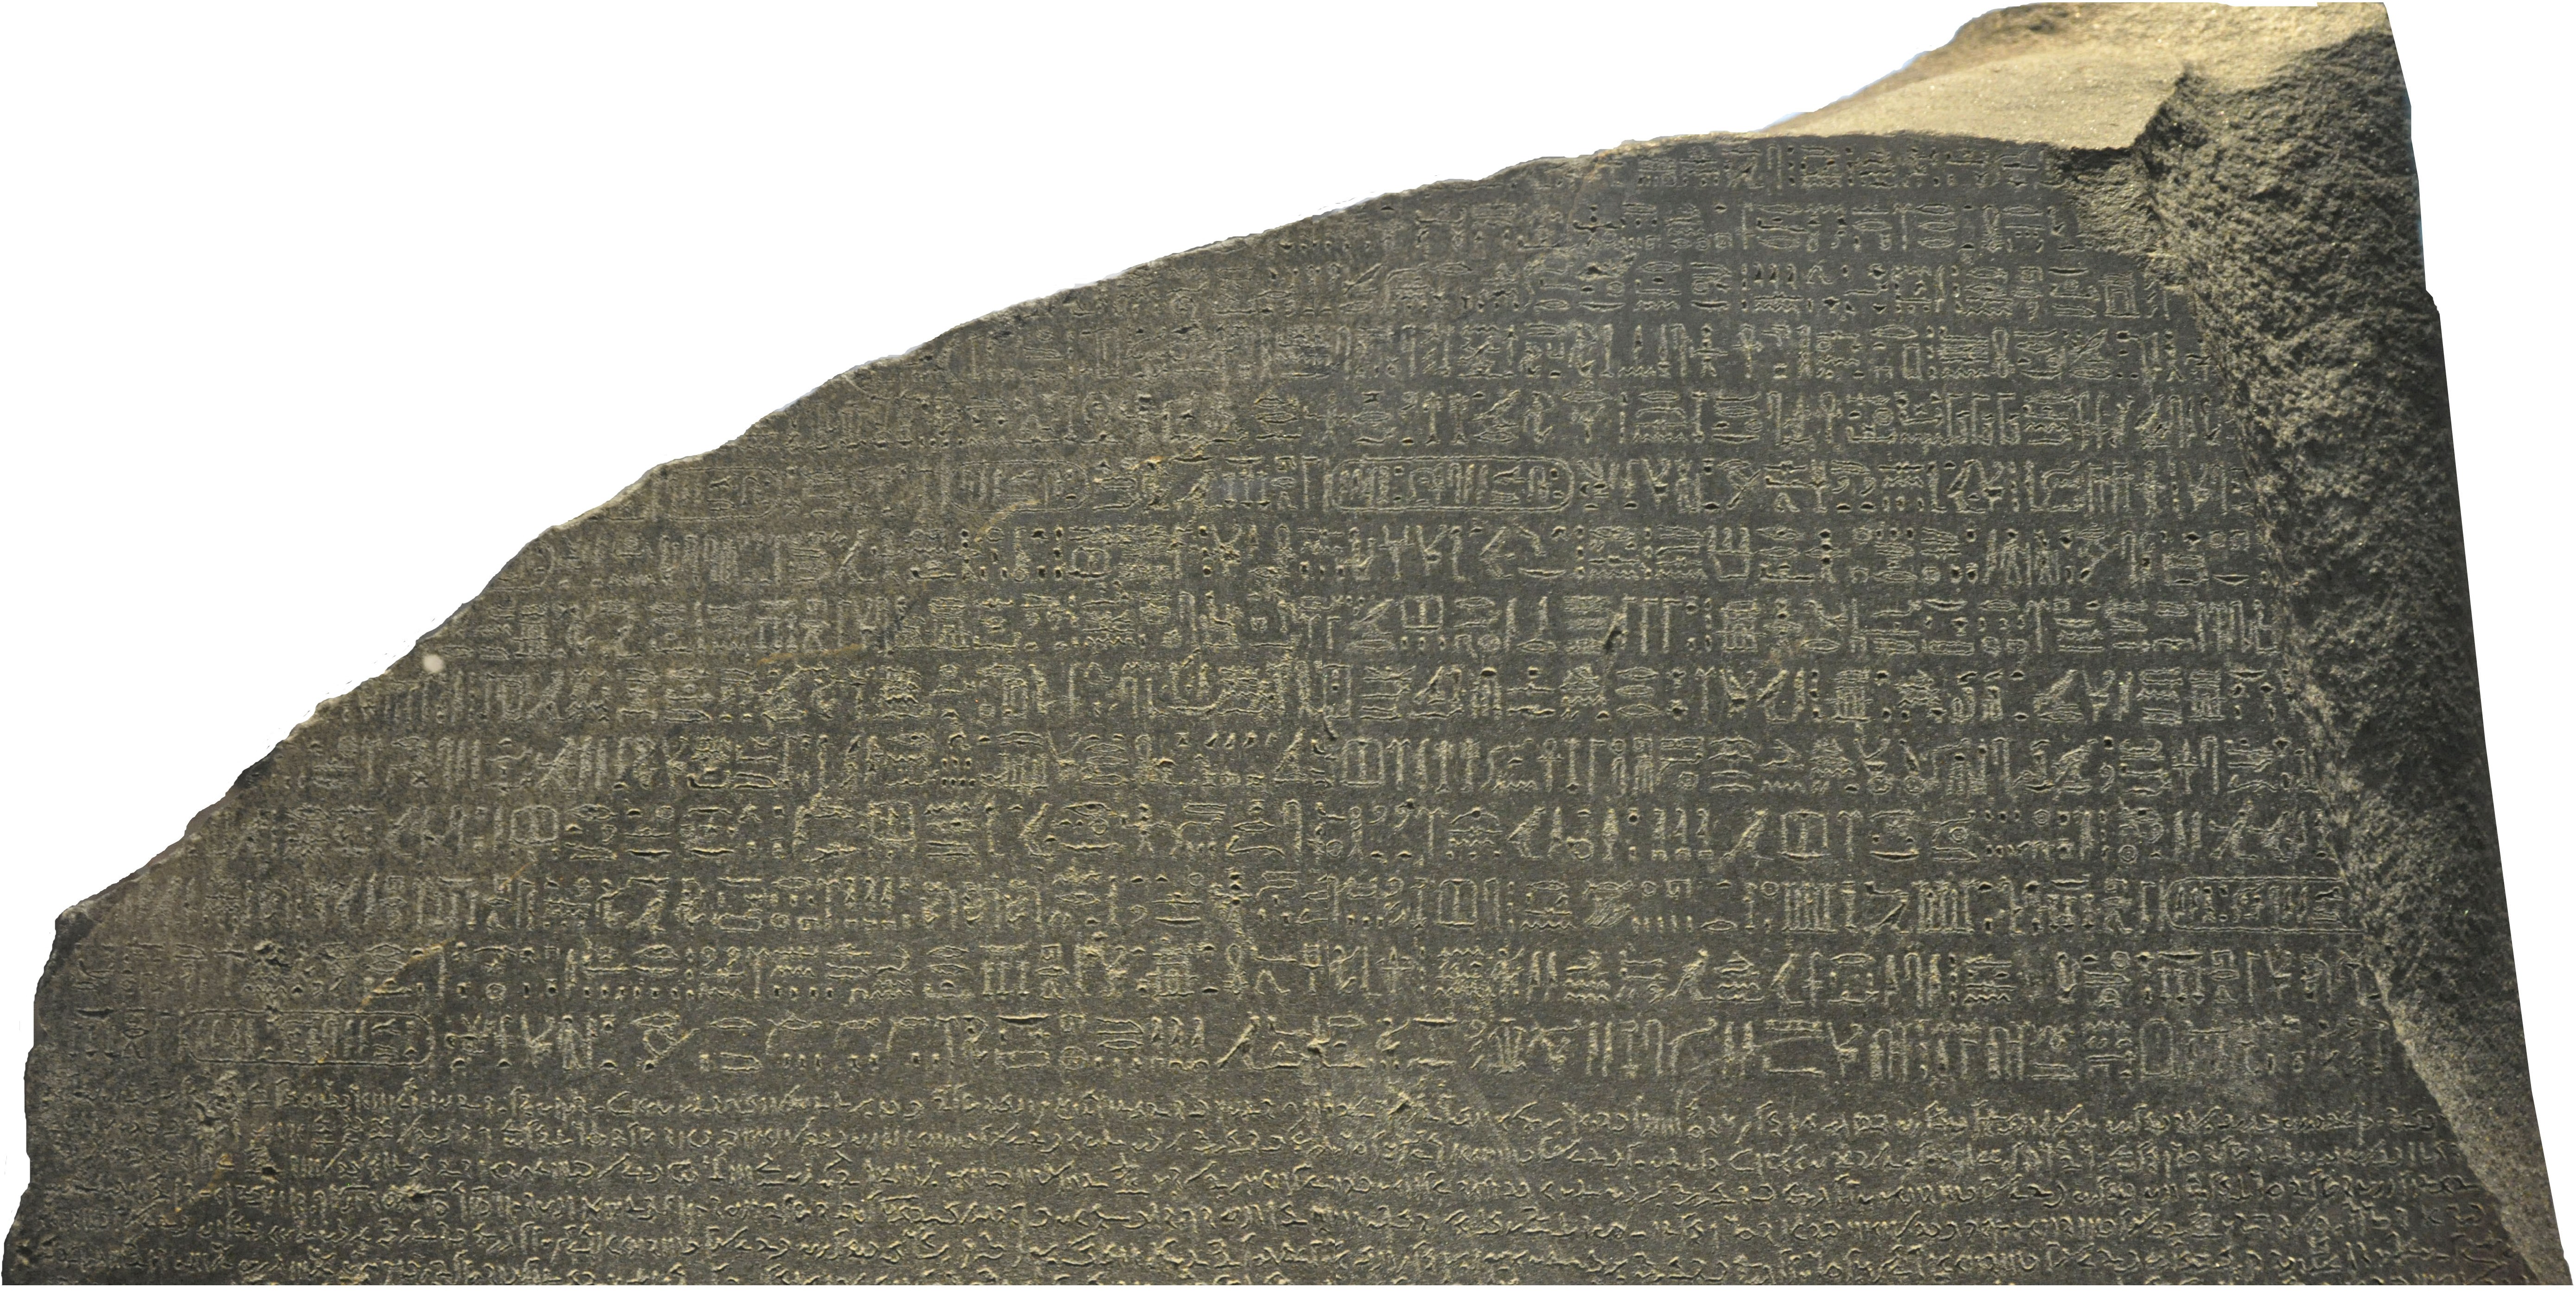 Haut de la Pierre de Rosette - Hiéroglyphes